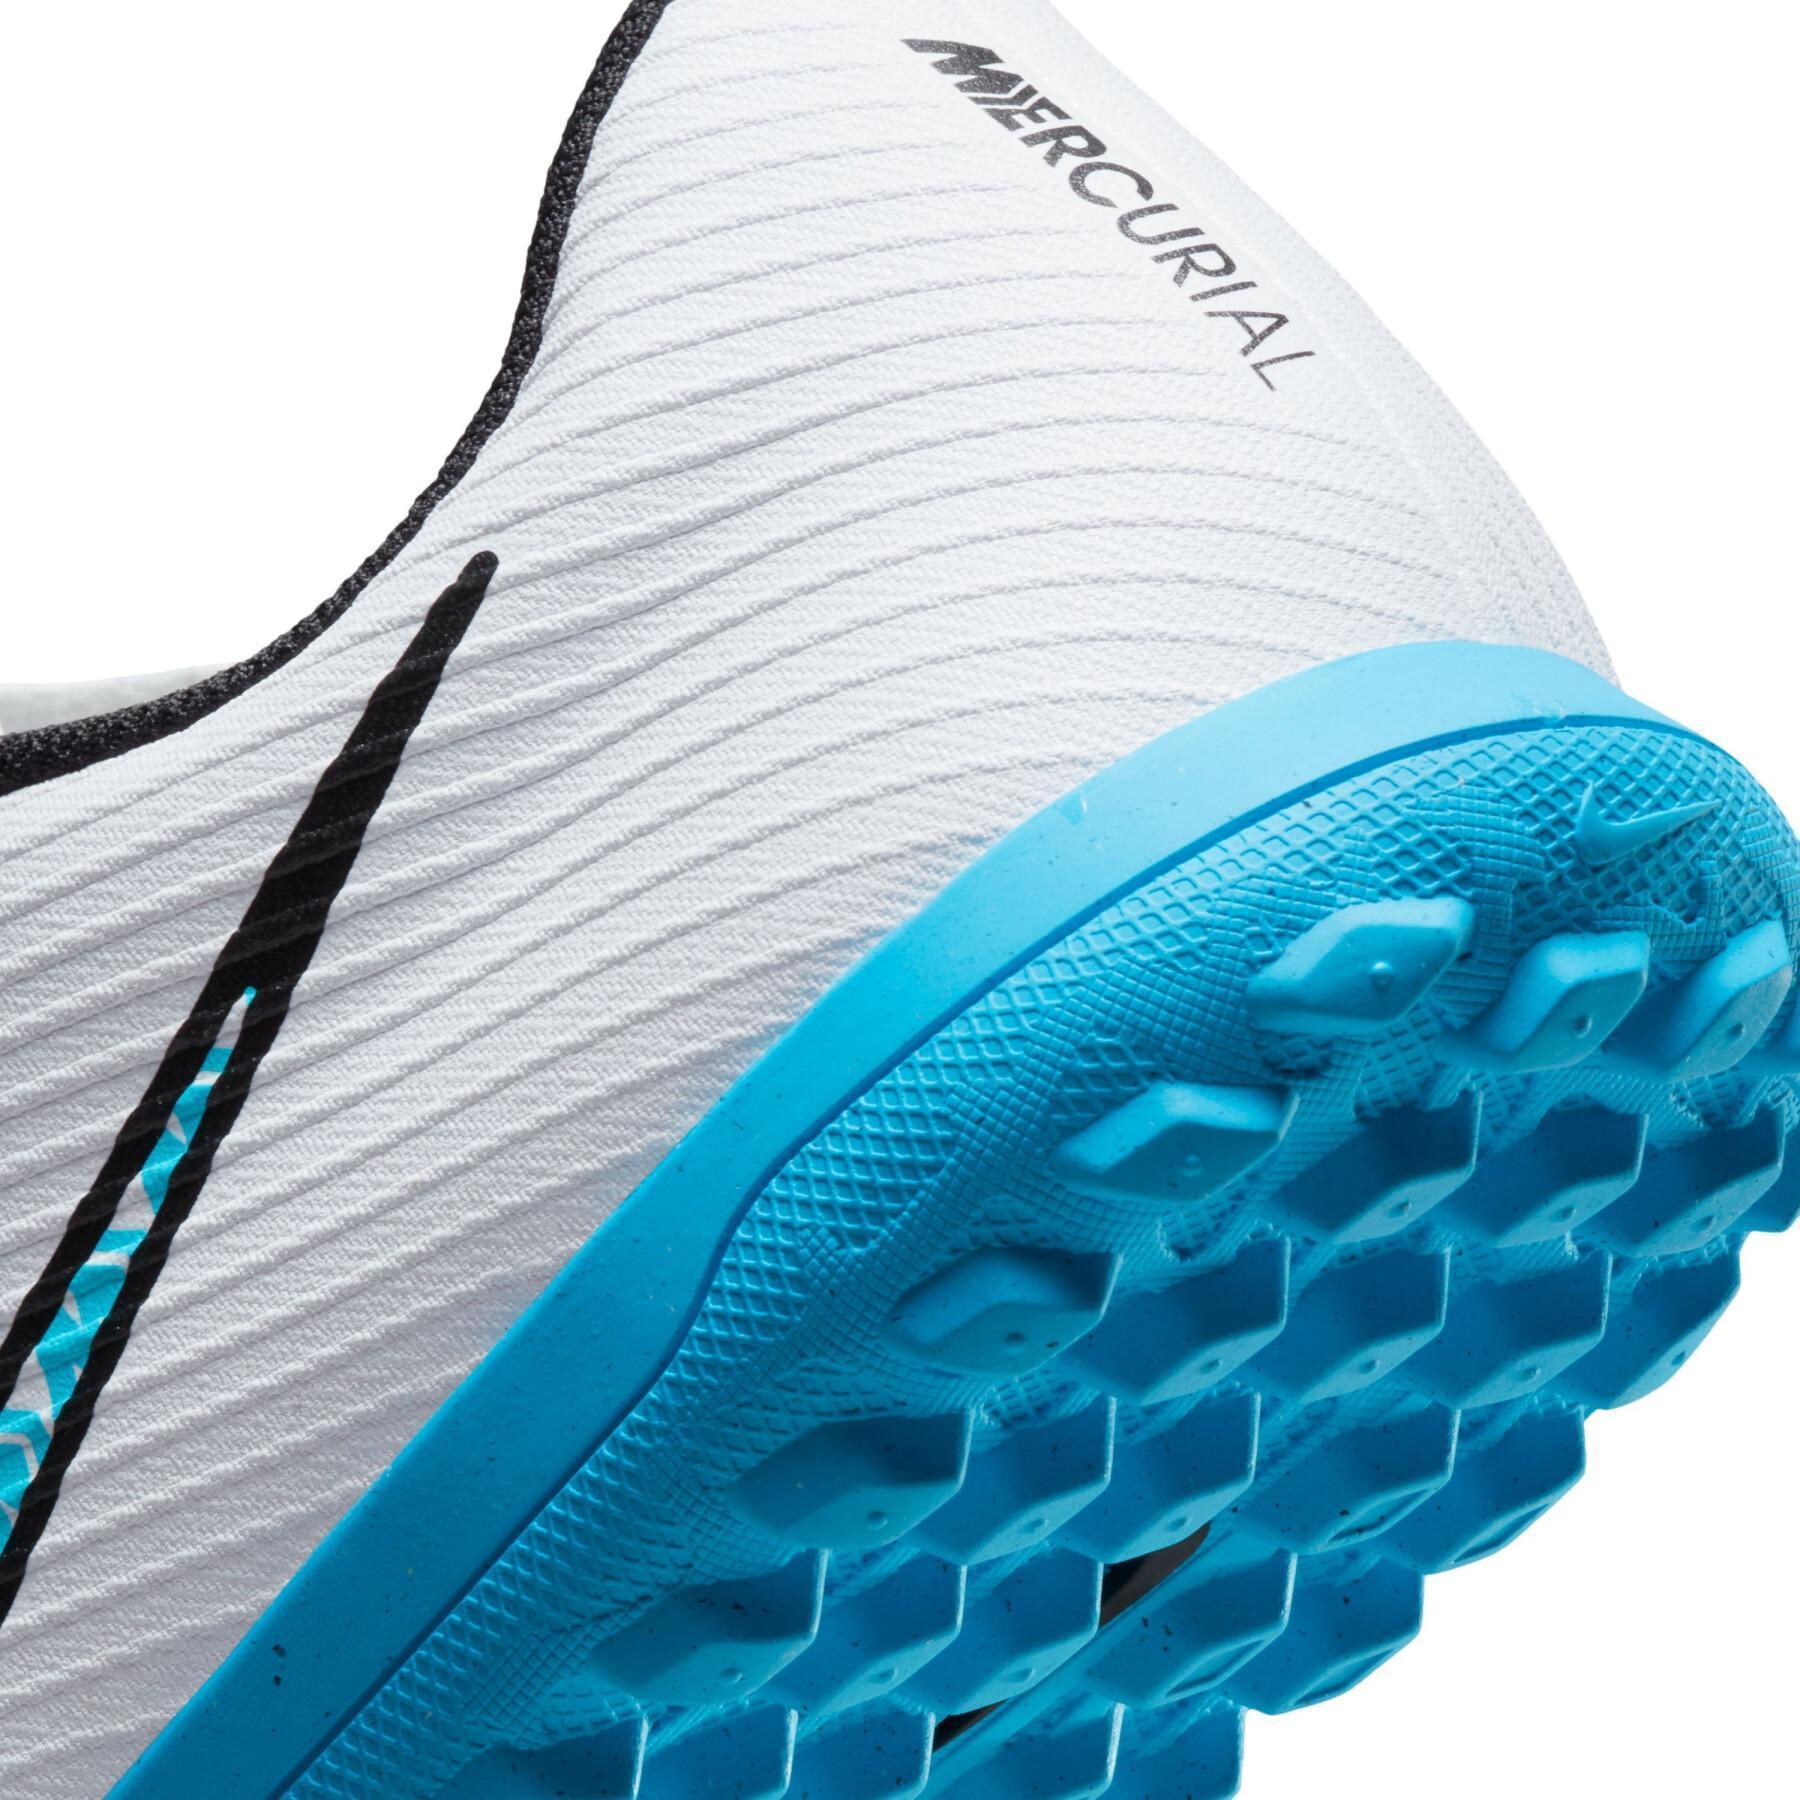 Sapatos de futebol Nike Mercurial Vapor 15 Club TF